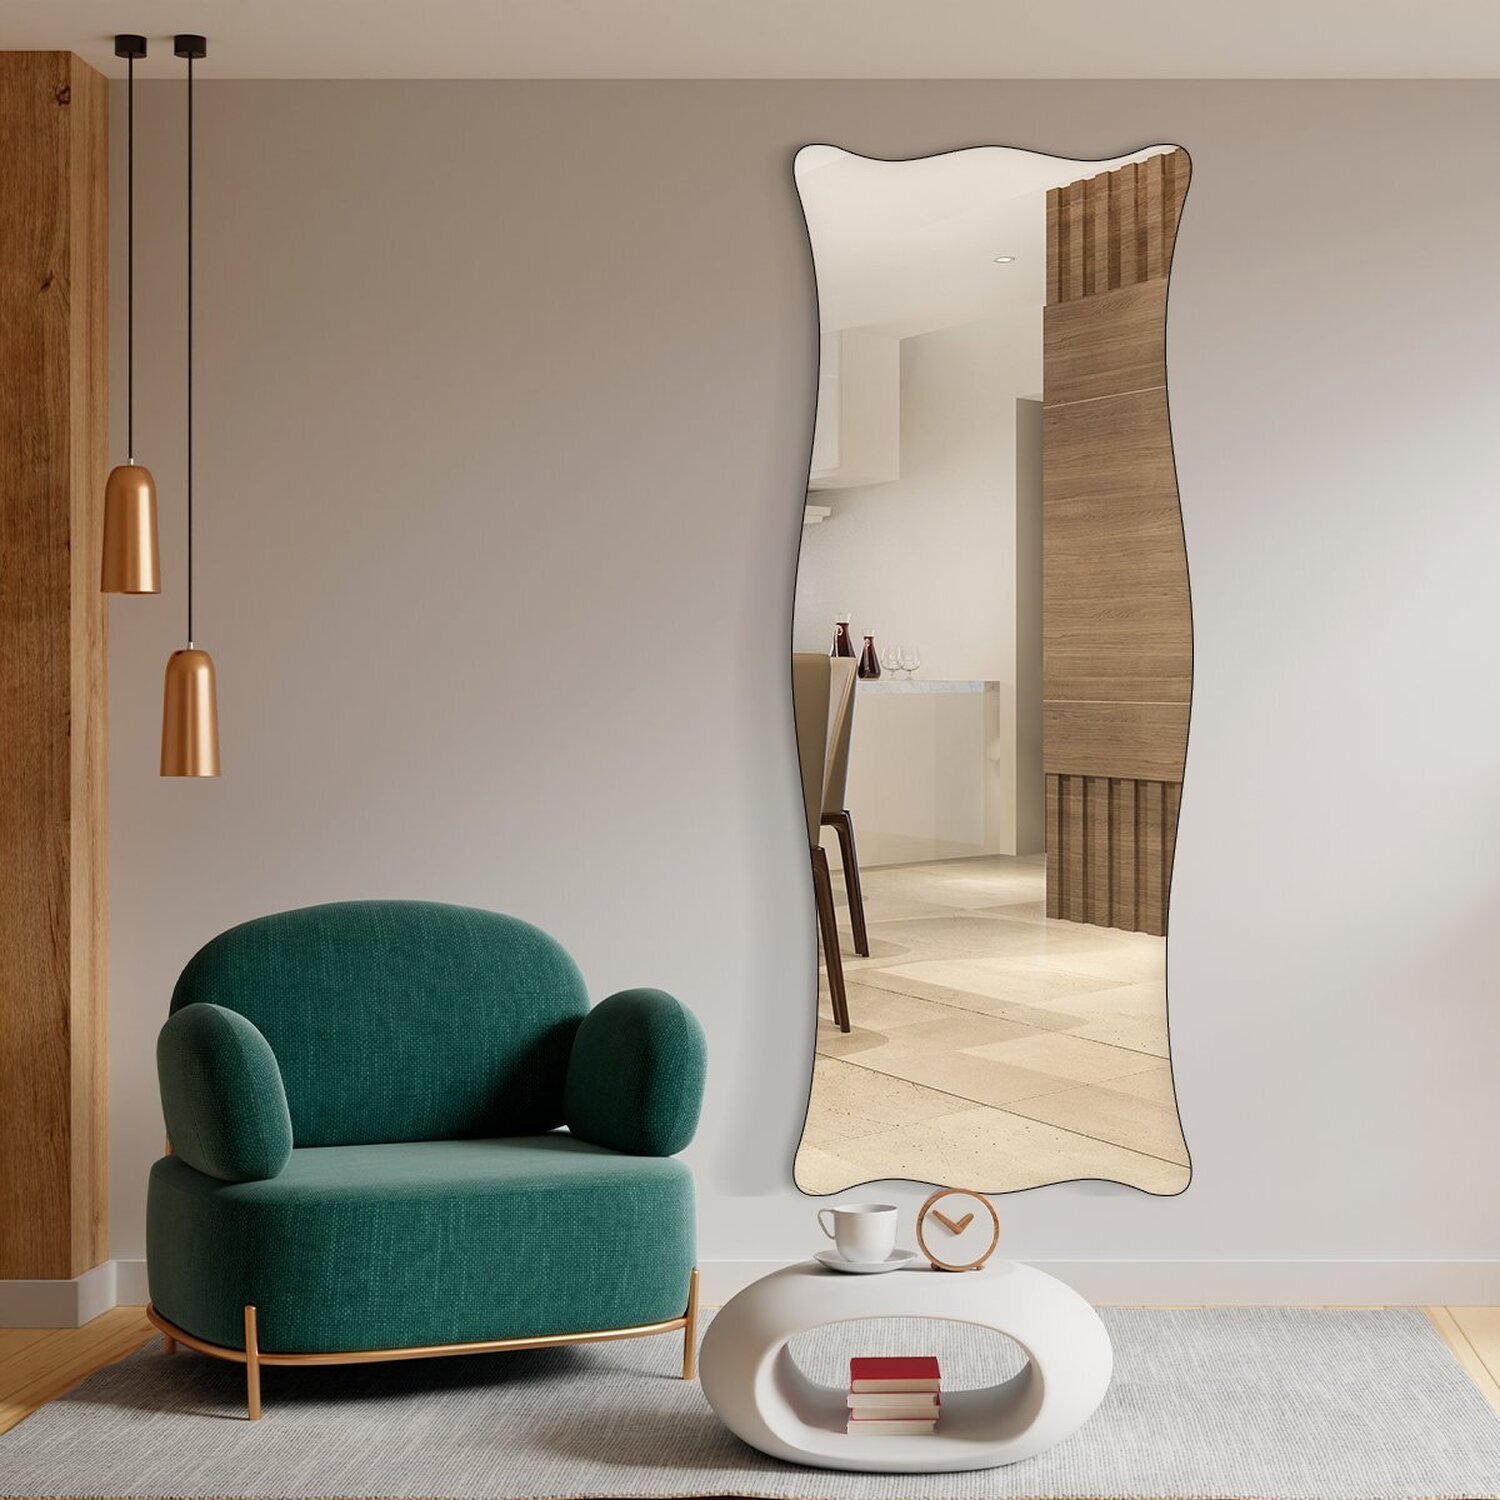 Espelho Corpo Inteiro Moderno do Pinterest 70x170cm Paris - 5